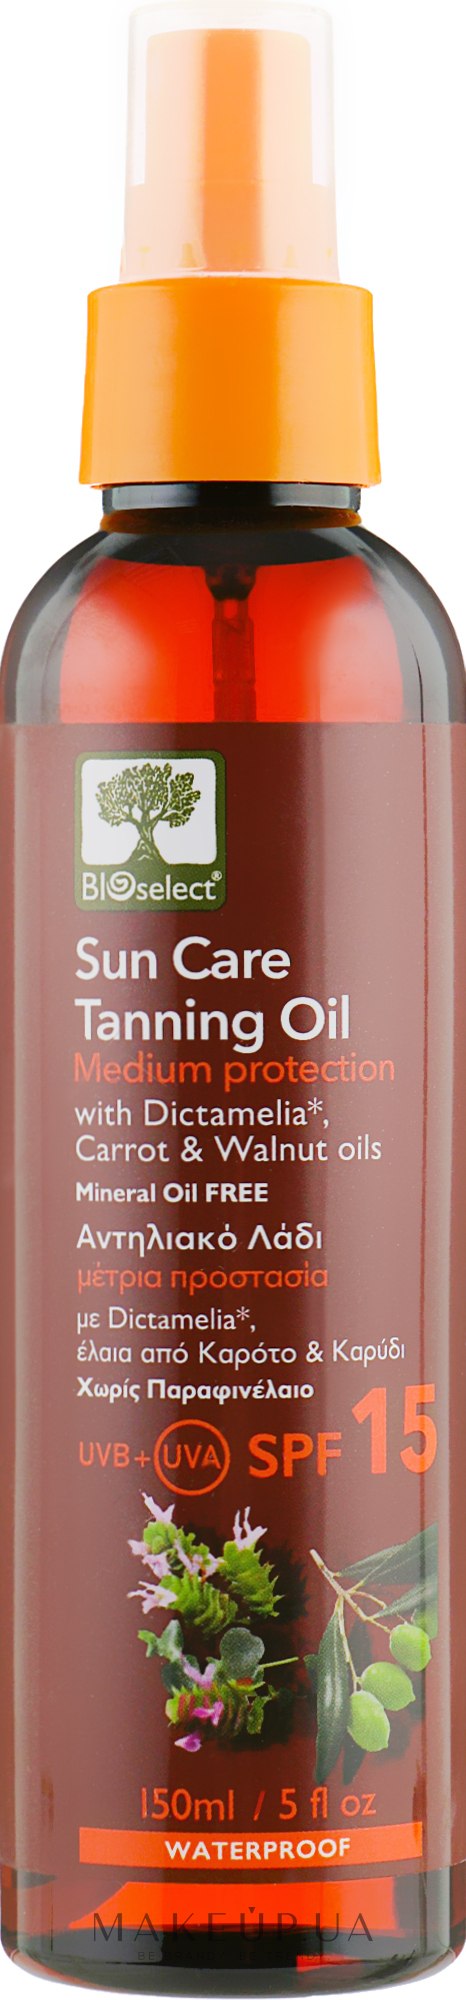 Сонцезахисна олія для засмаги - Bioselect Sun Care Tanning Oil SPF15 — фото 150ml